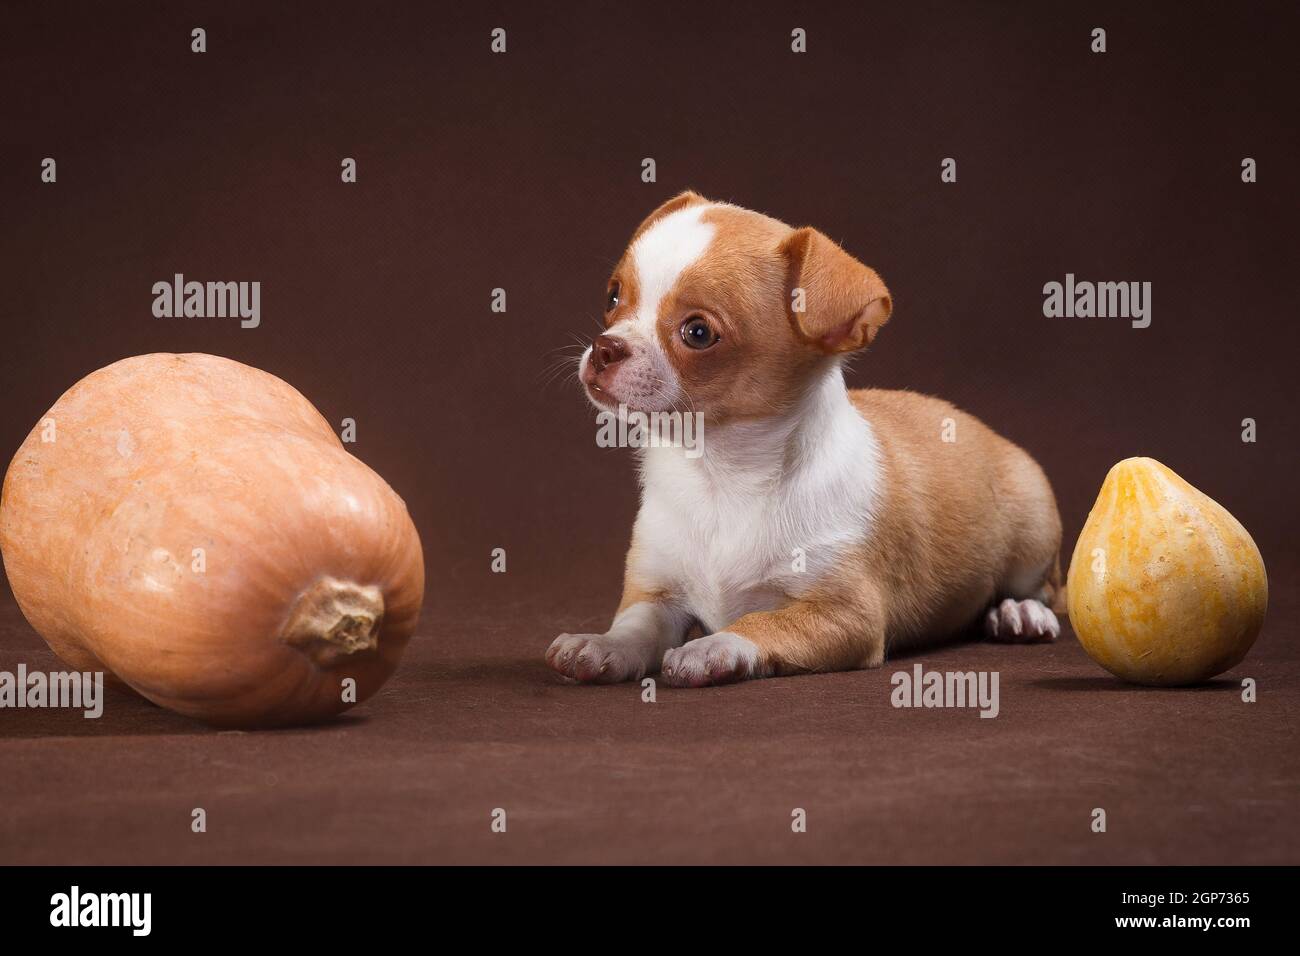 Cucciolo dai capelli lisci della razza Chihuahua, rosso-bianco giace su uno sfondo marrone accanto a due zucche Foto Stock